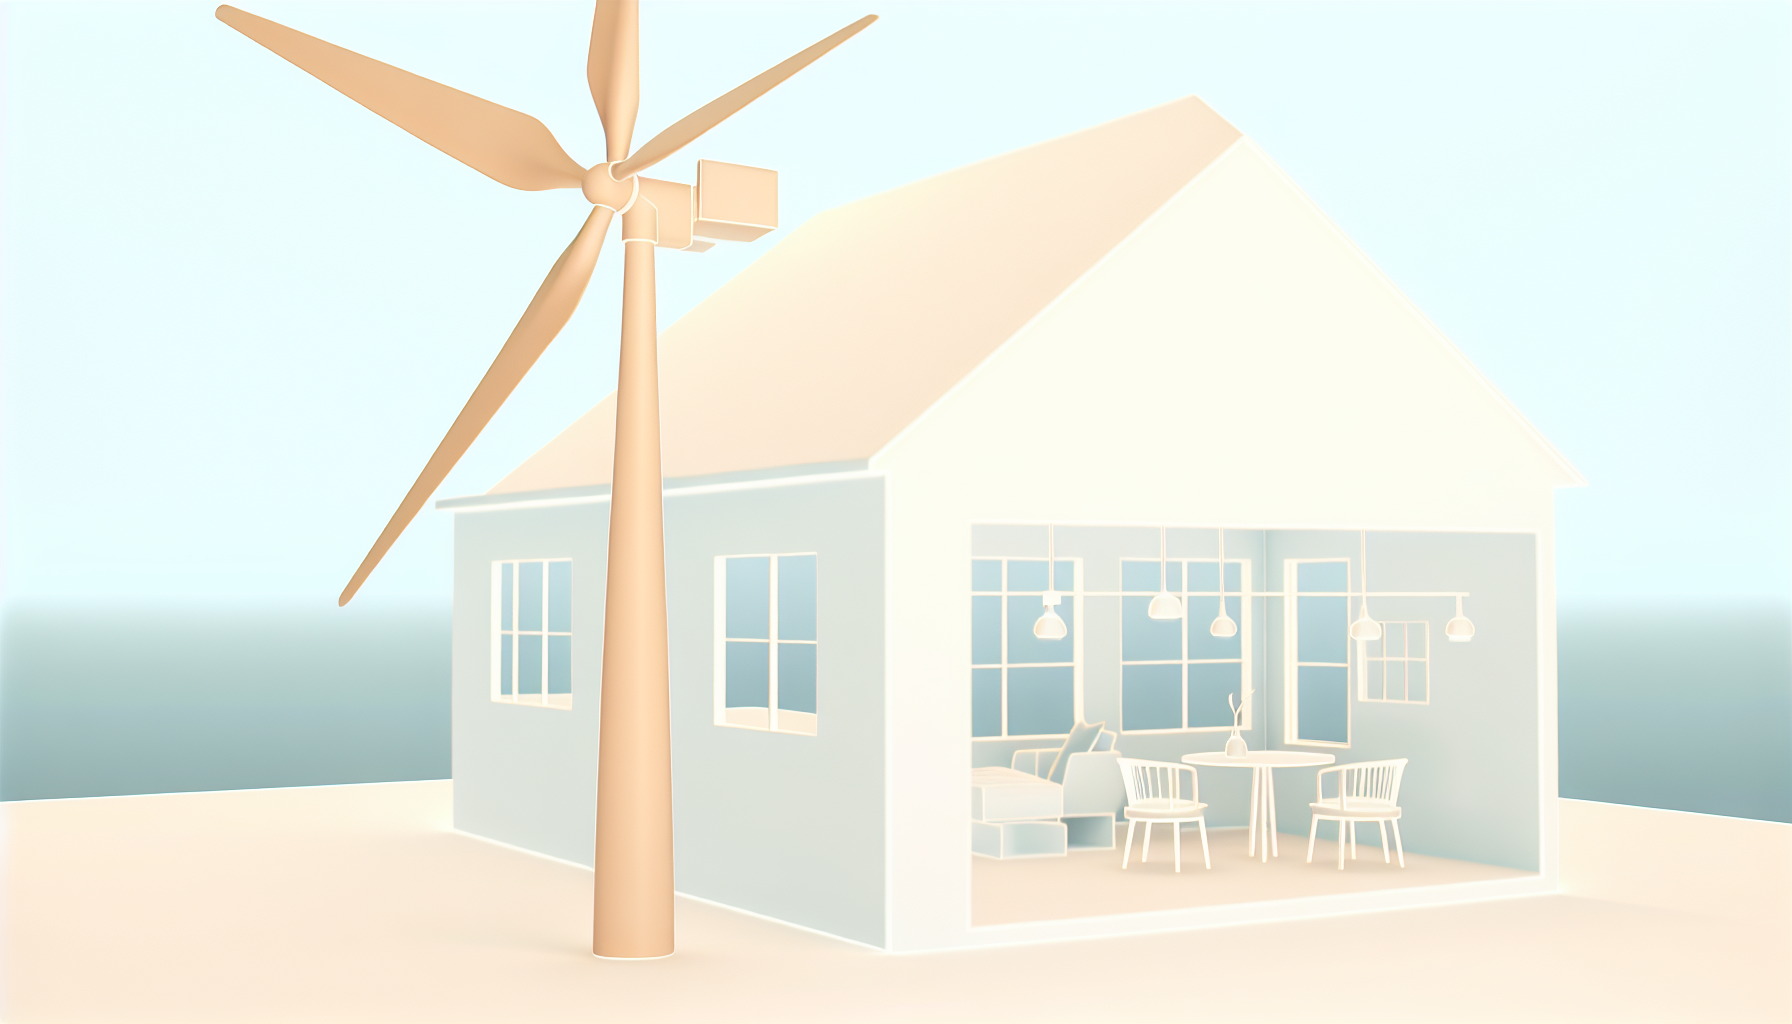                               Windkraftanlage für Zuhause: Nachhaltige Energie für das Eigenheim                             
                              